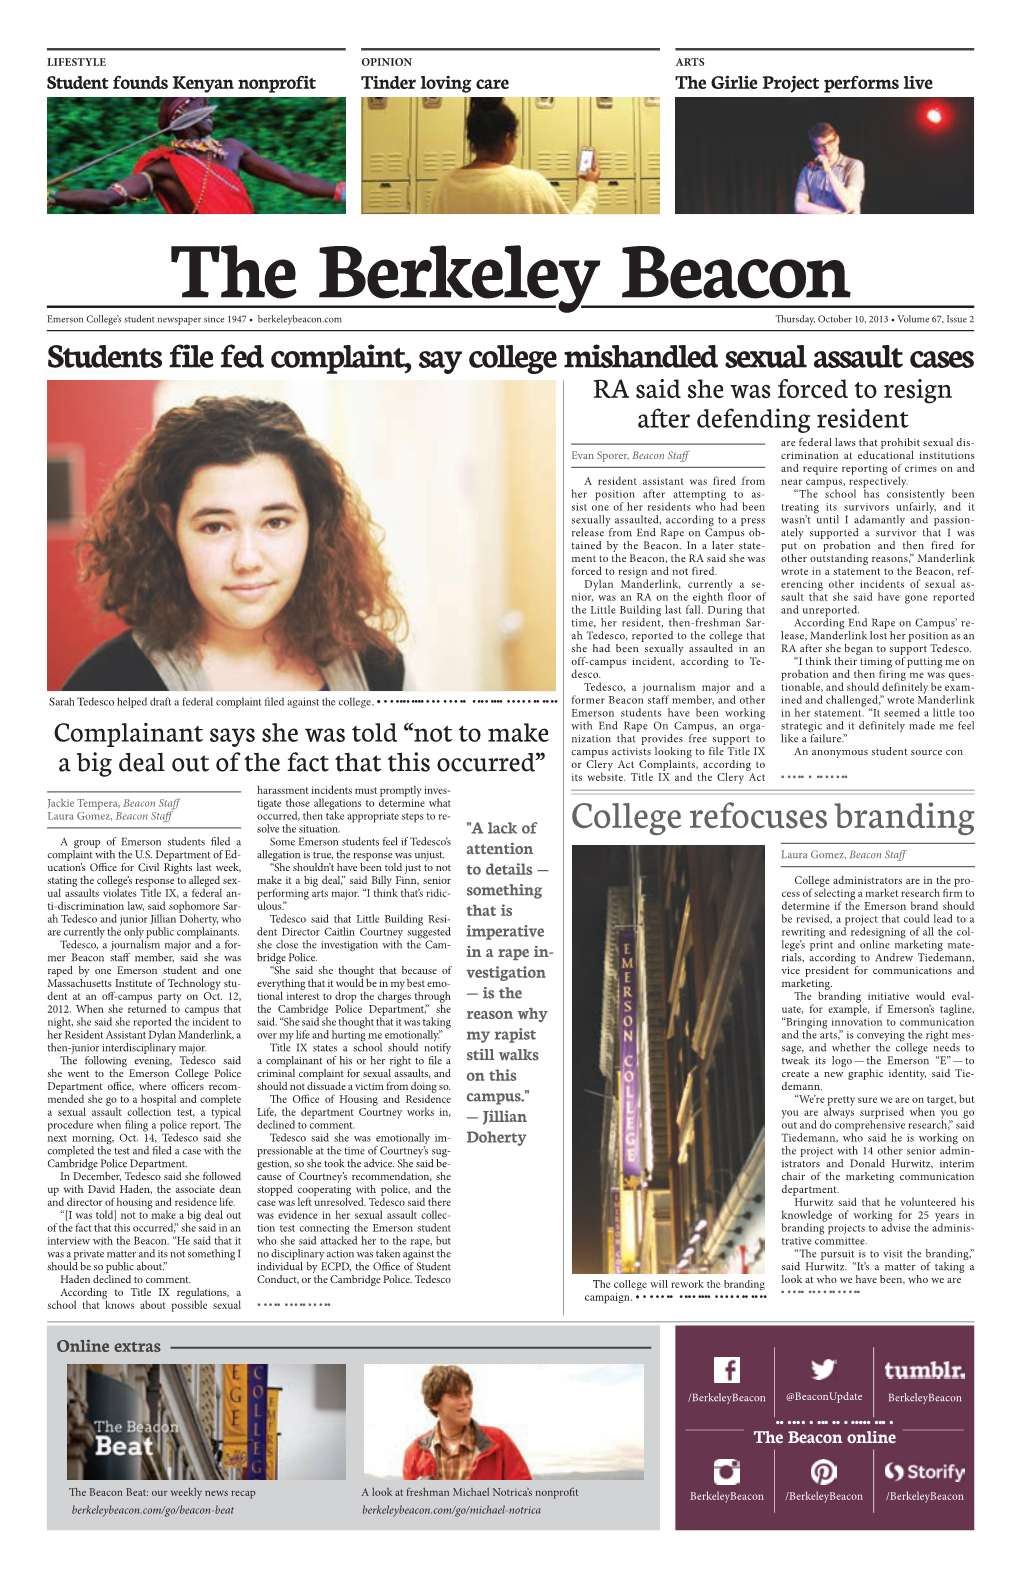 The Berkeley Beacon